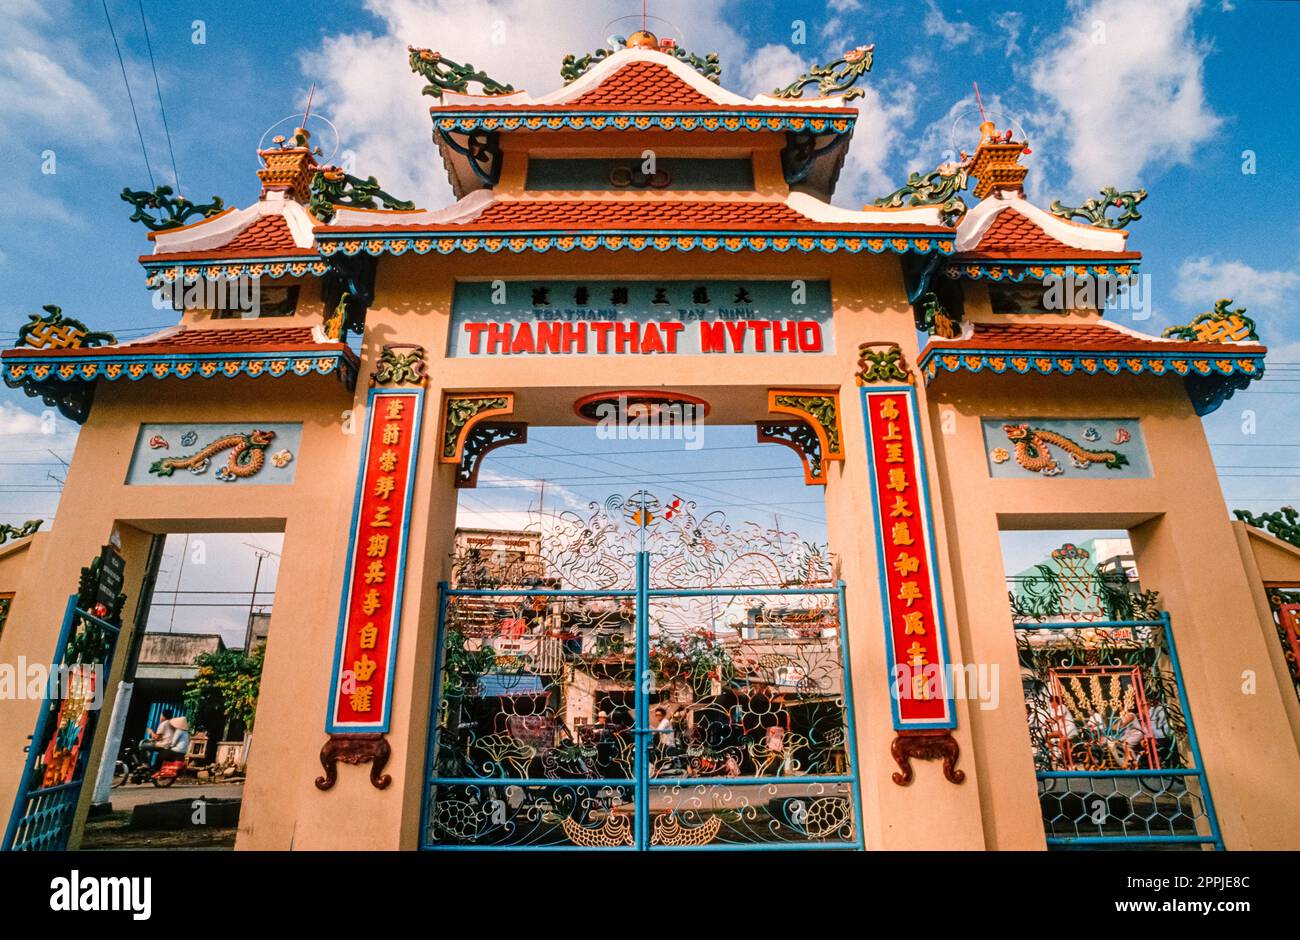 Scannerizzata di una fotografia storica a colori dell'ingresso di una pagoda vietnamita Foto Stock